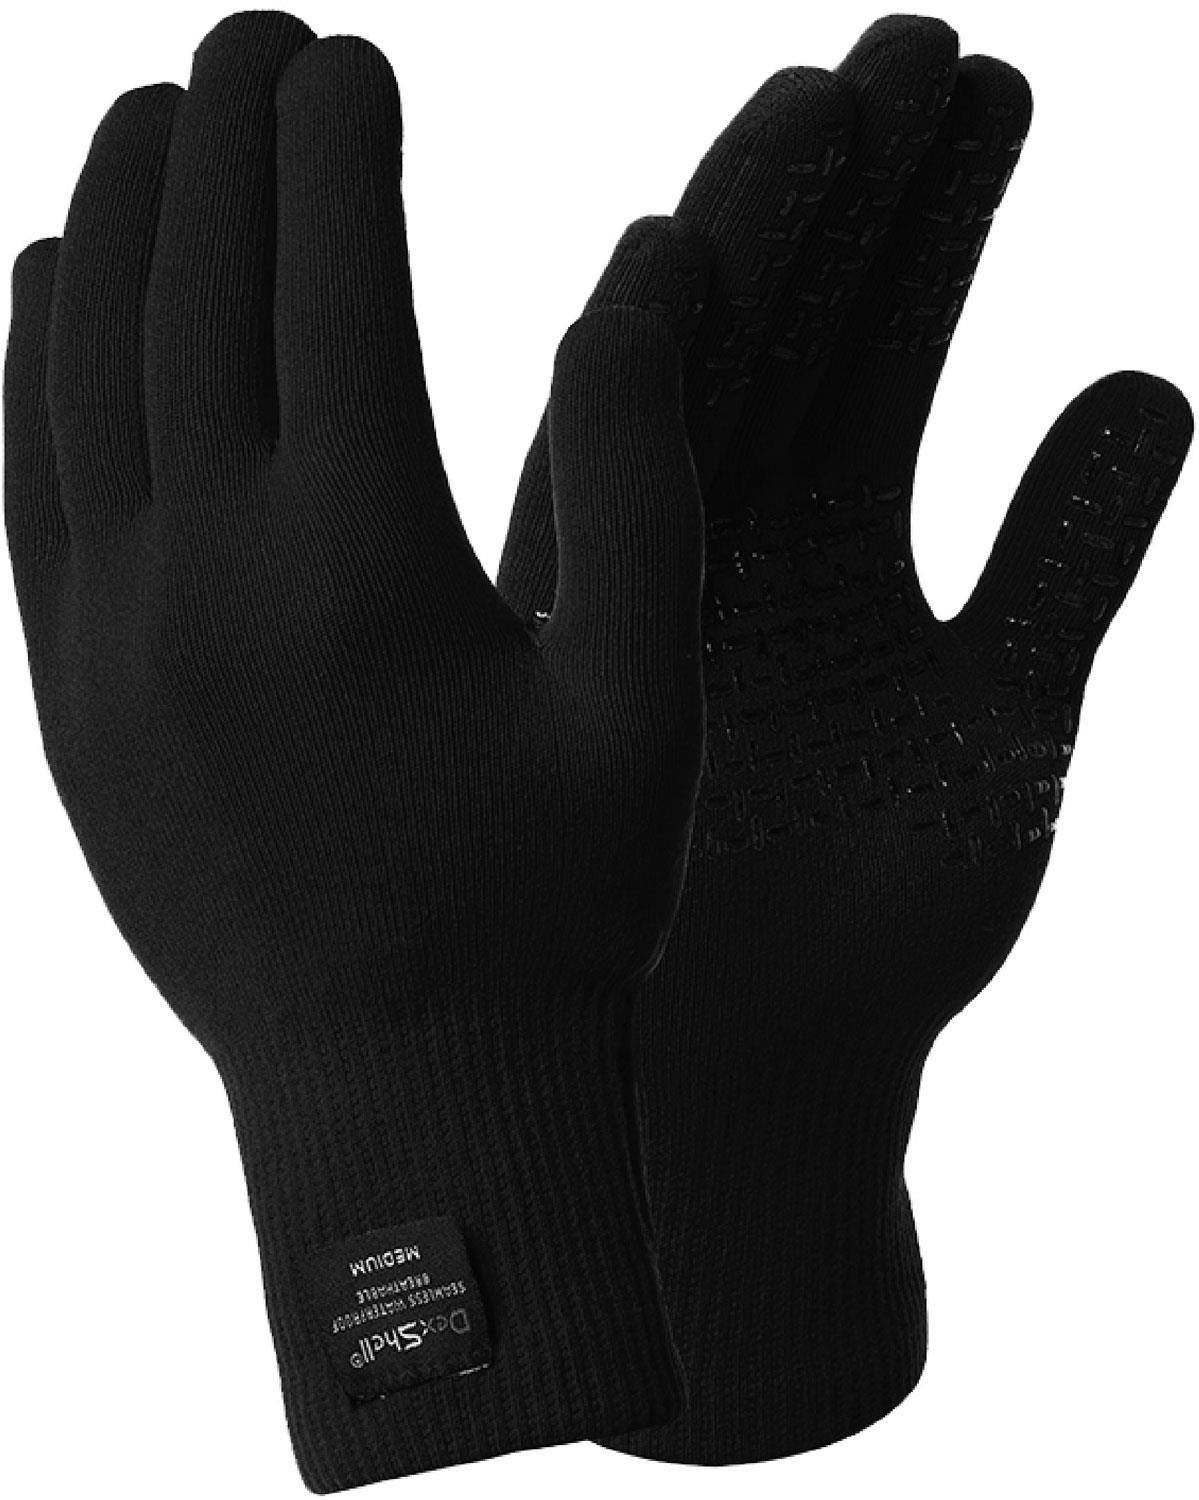 DexShell DryLite Glove